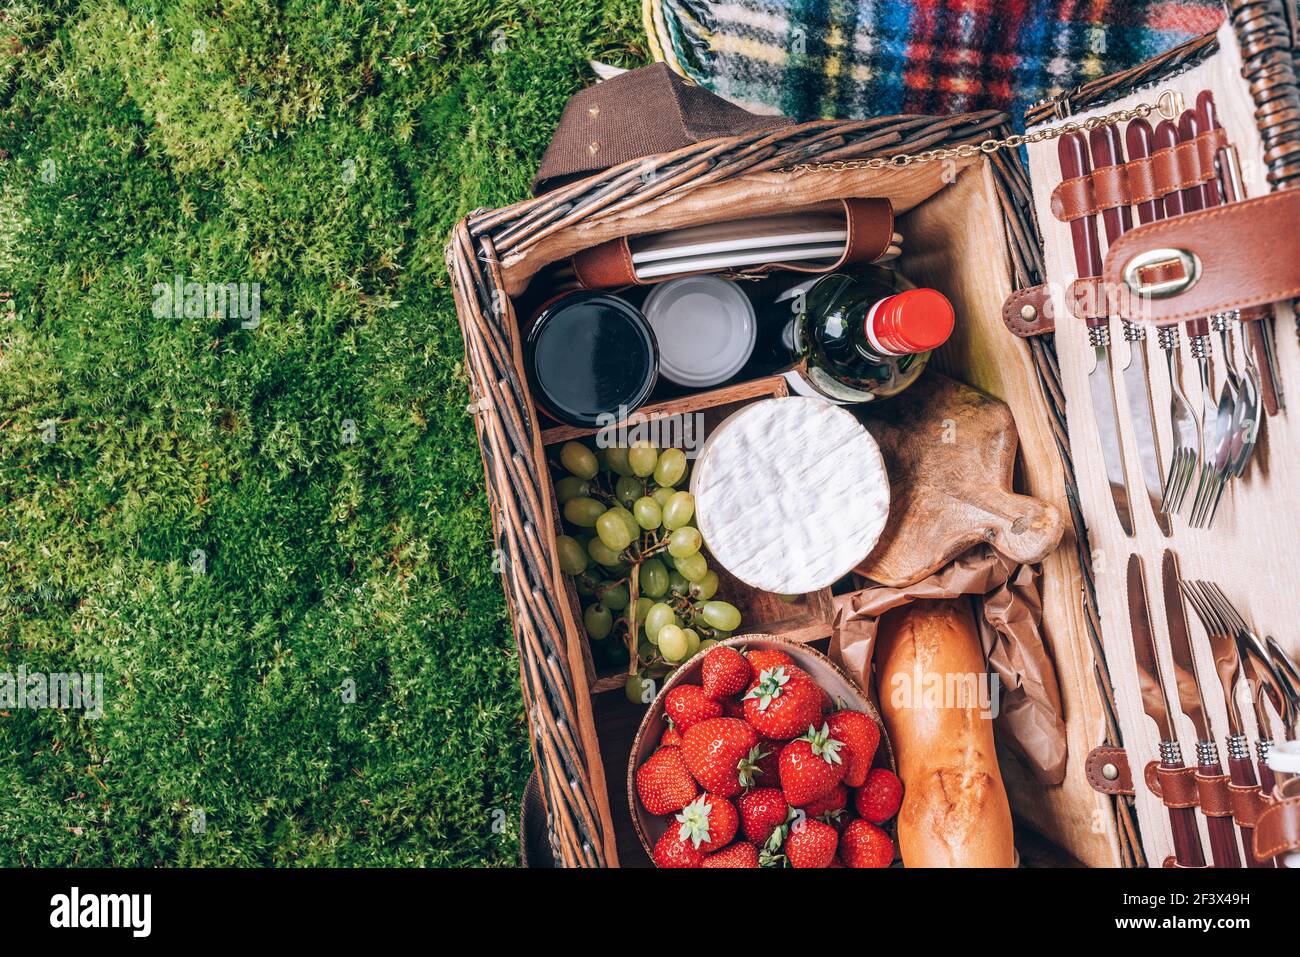 Toller Picknickkorb mit Käse, Erdbeeren, Trauben, Baguette, Wein zum Picknick auf karierten grünen Hintergrund. Draufsicht. Speicherplatz kopieren. Sommerfamilie Stockfoto